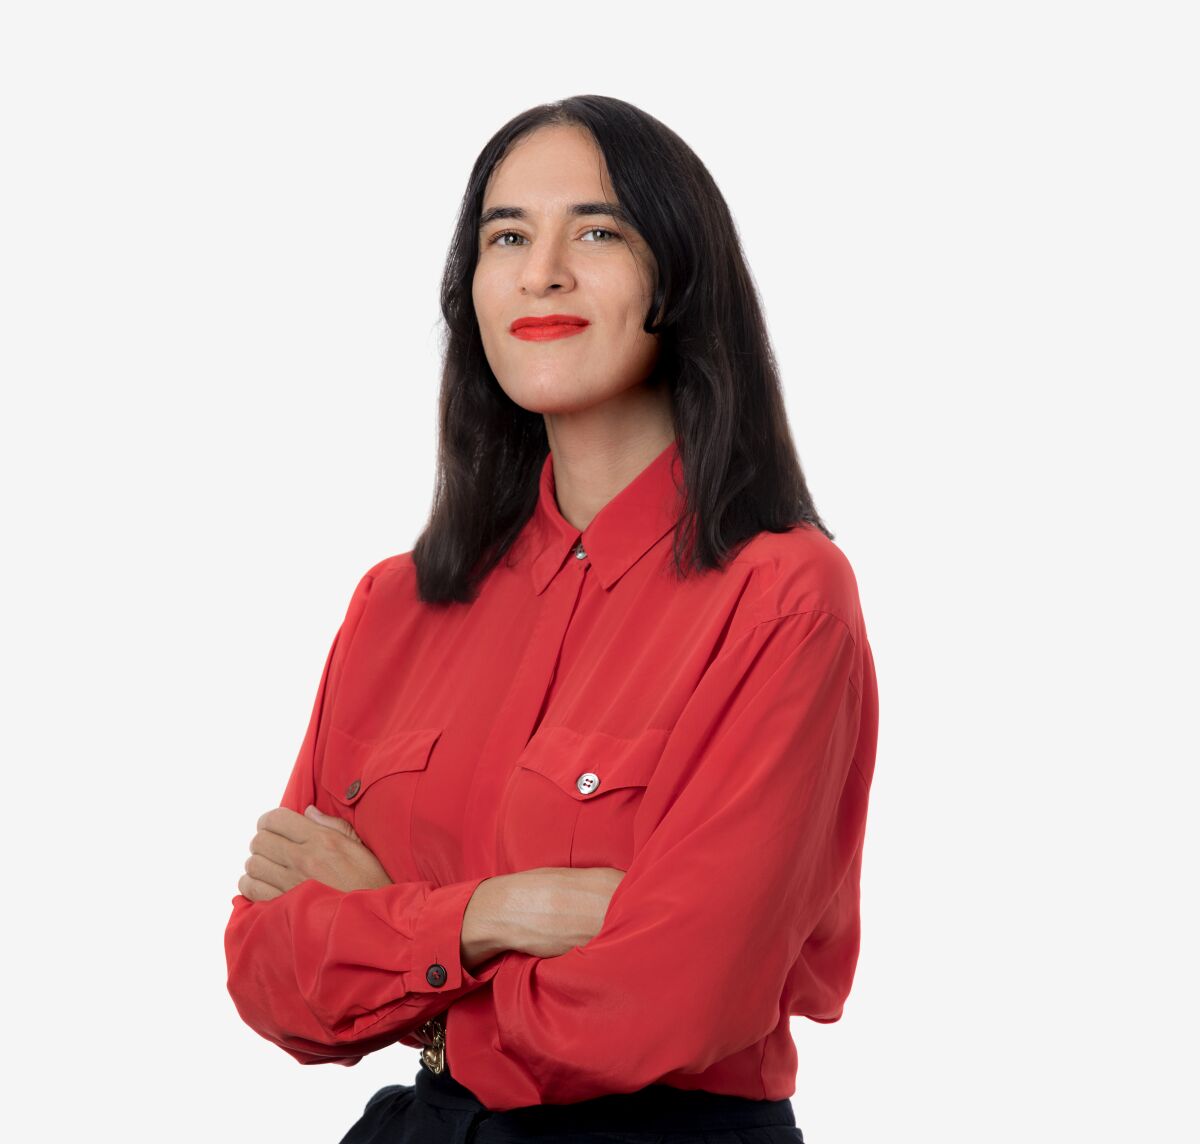 Managing Editor Sara Yasin